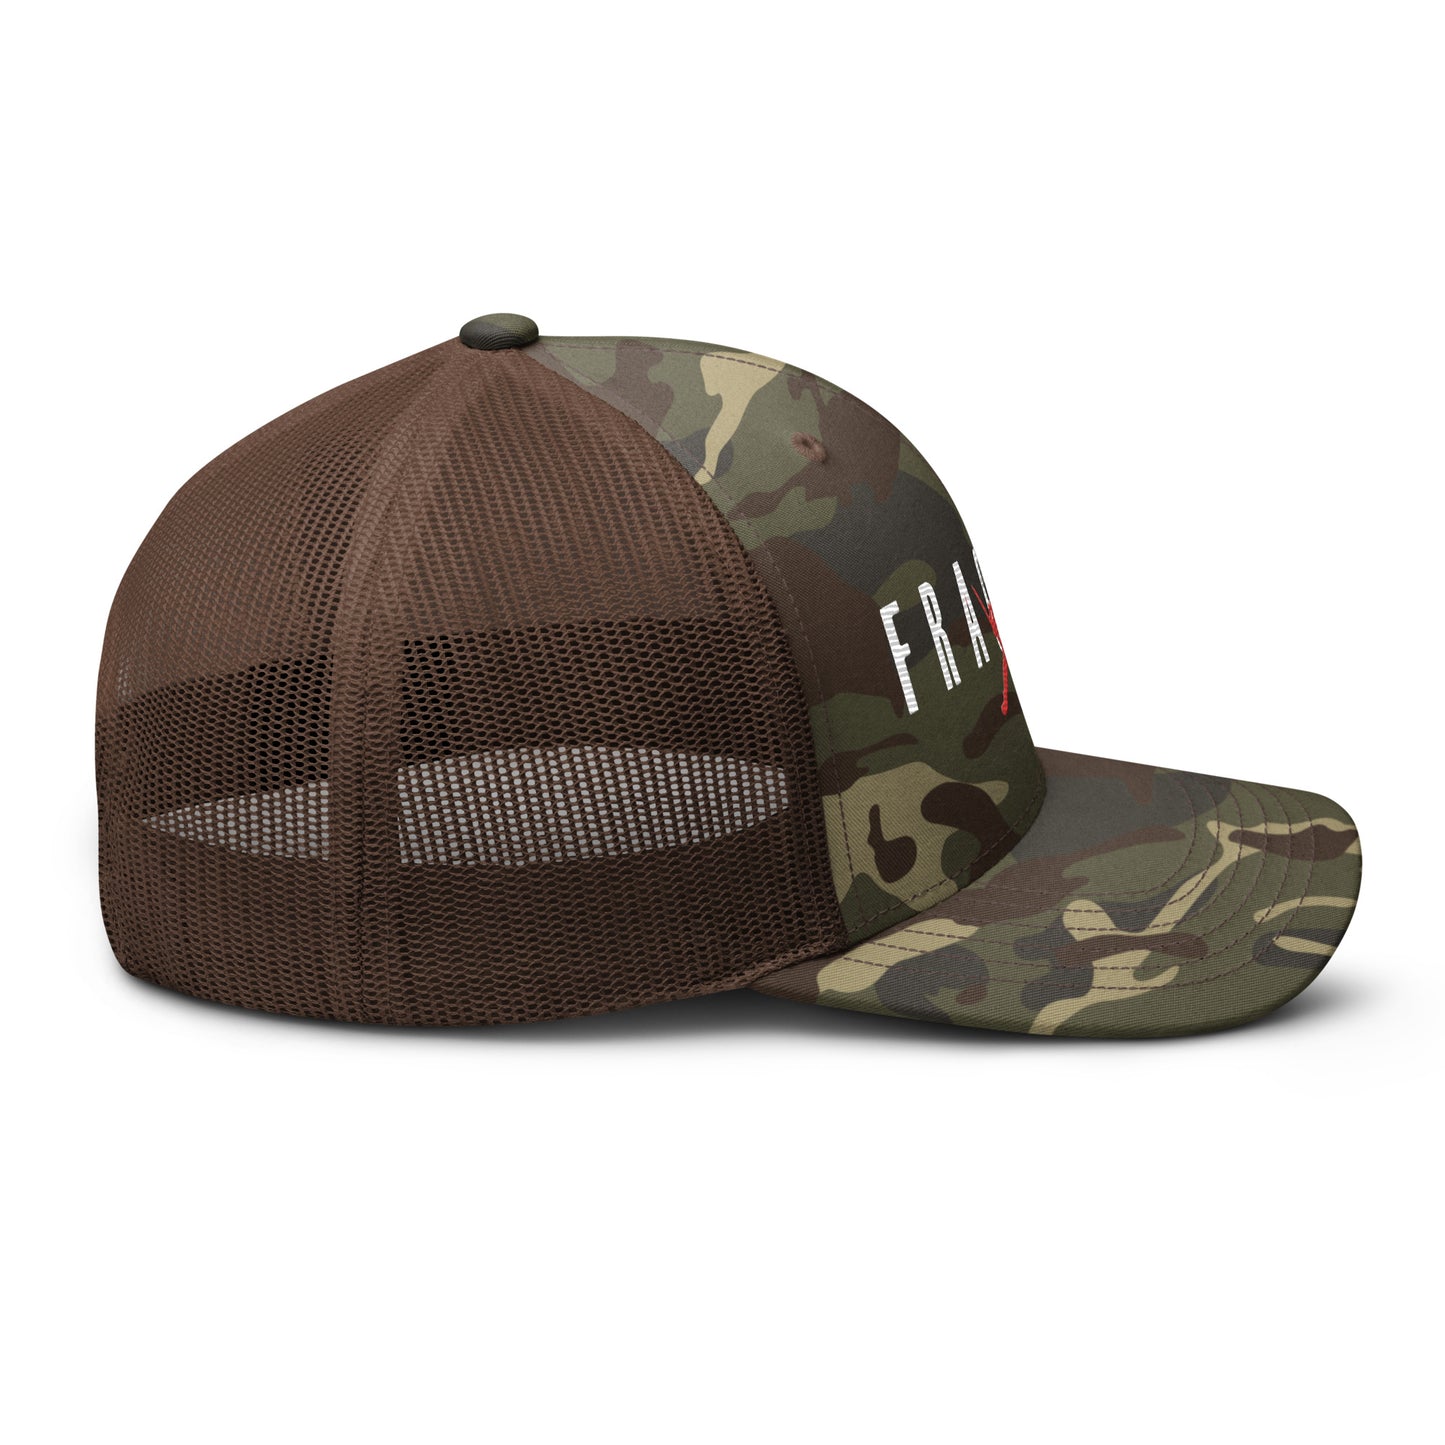 Air Fragman Camouflage trucker hat